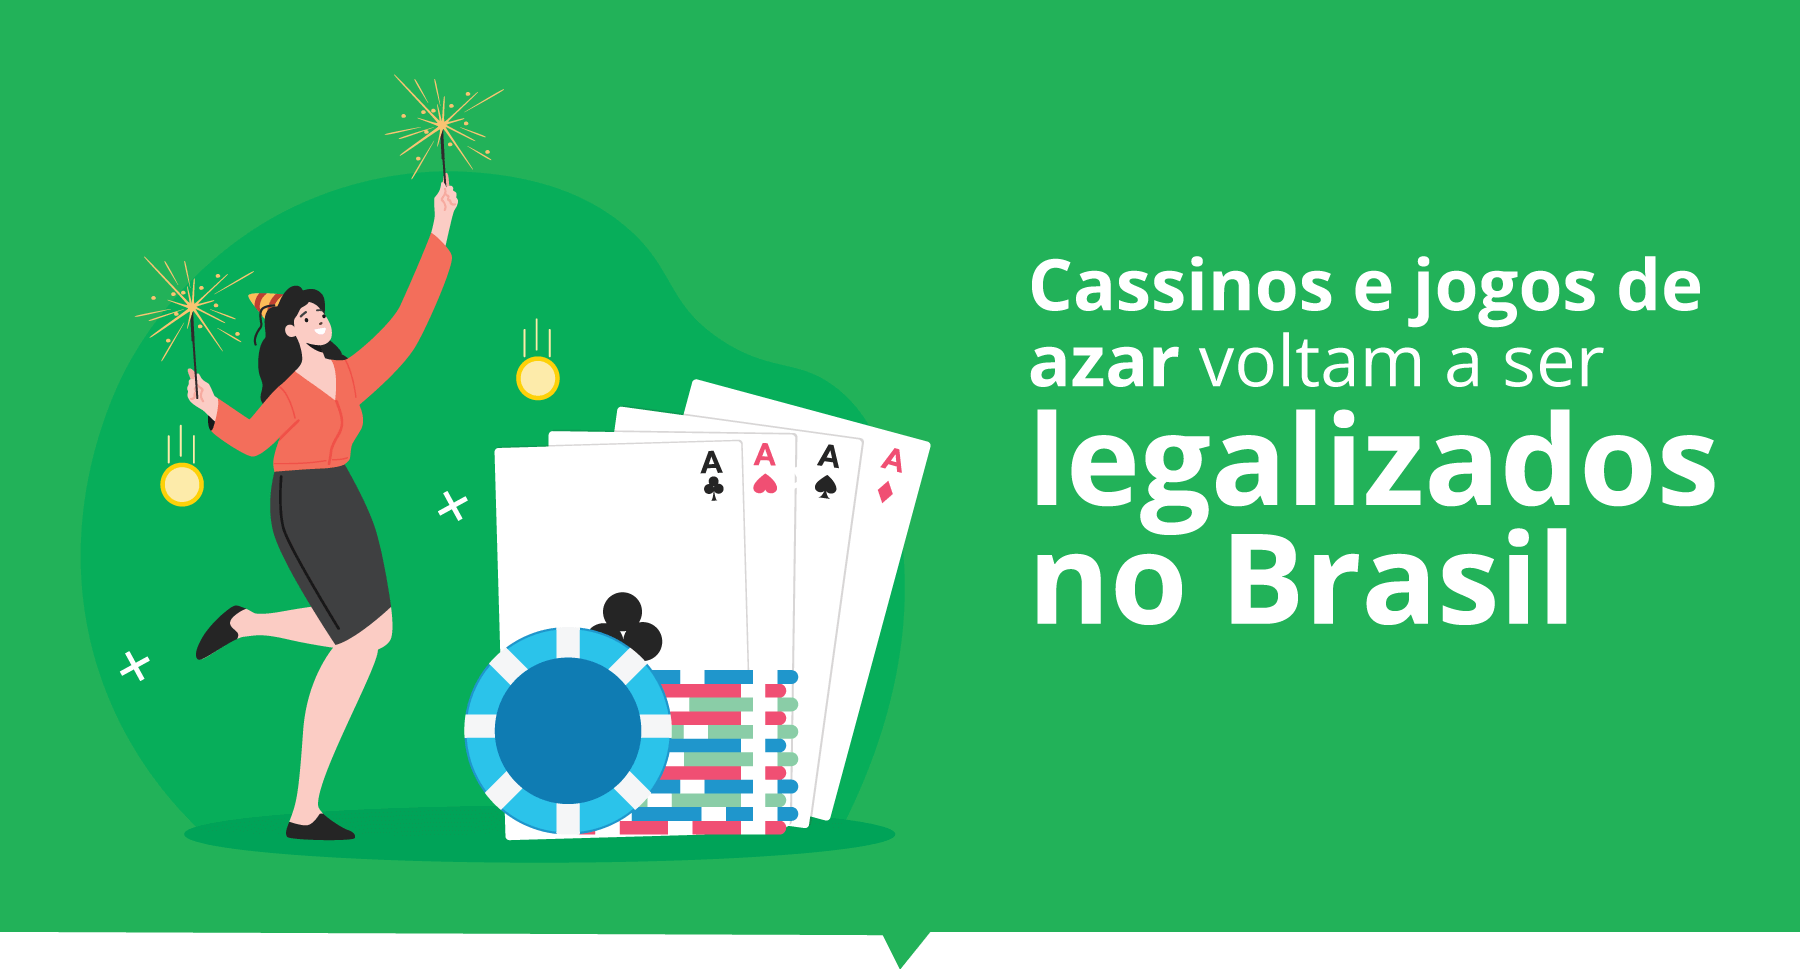 Cassinos e jogos de azar voltam a ser legalizados no Brasil